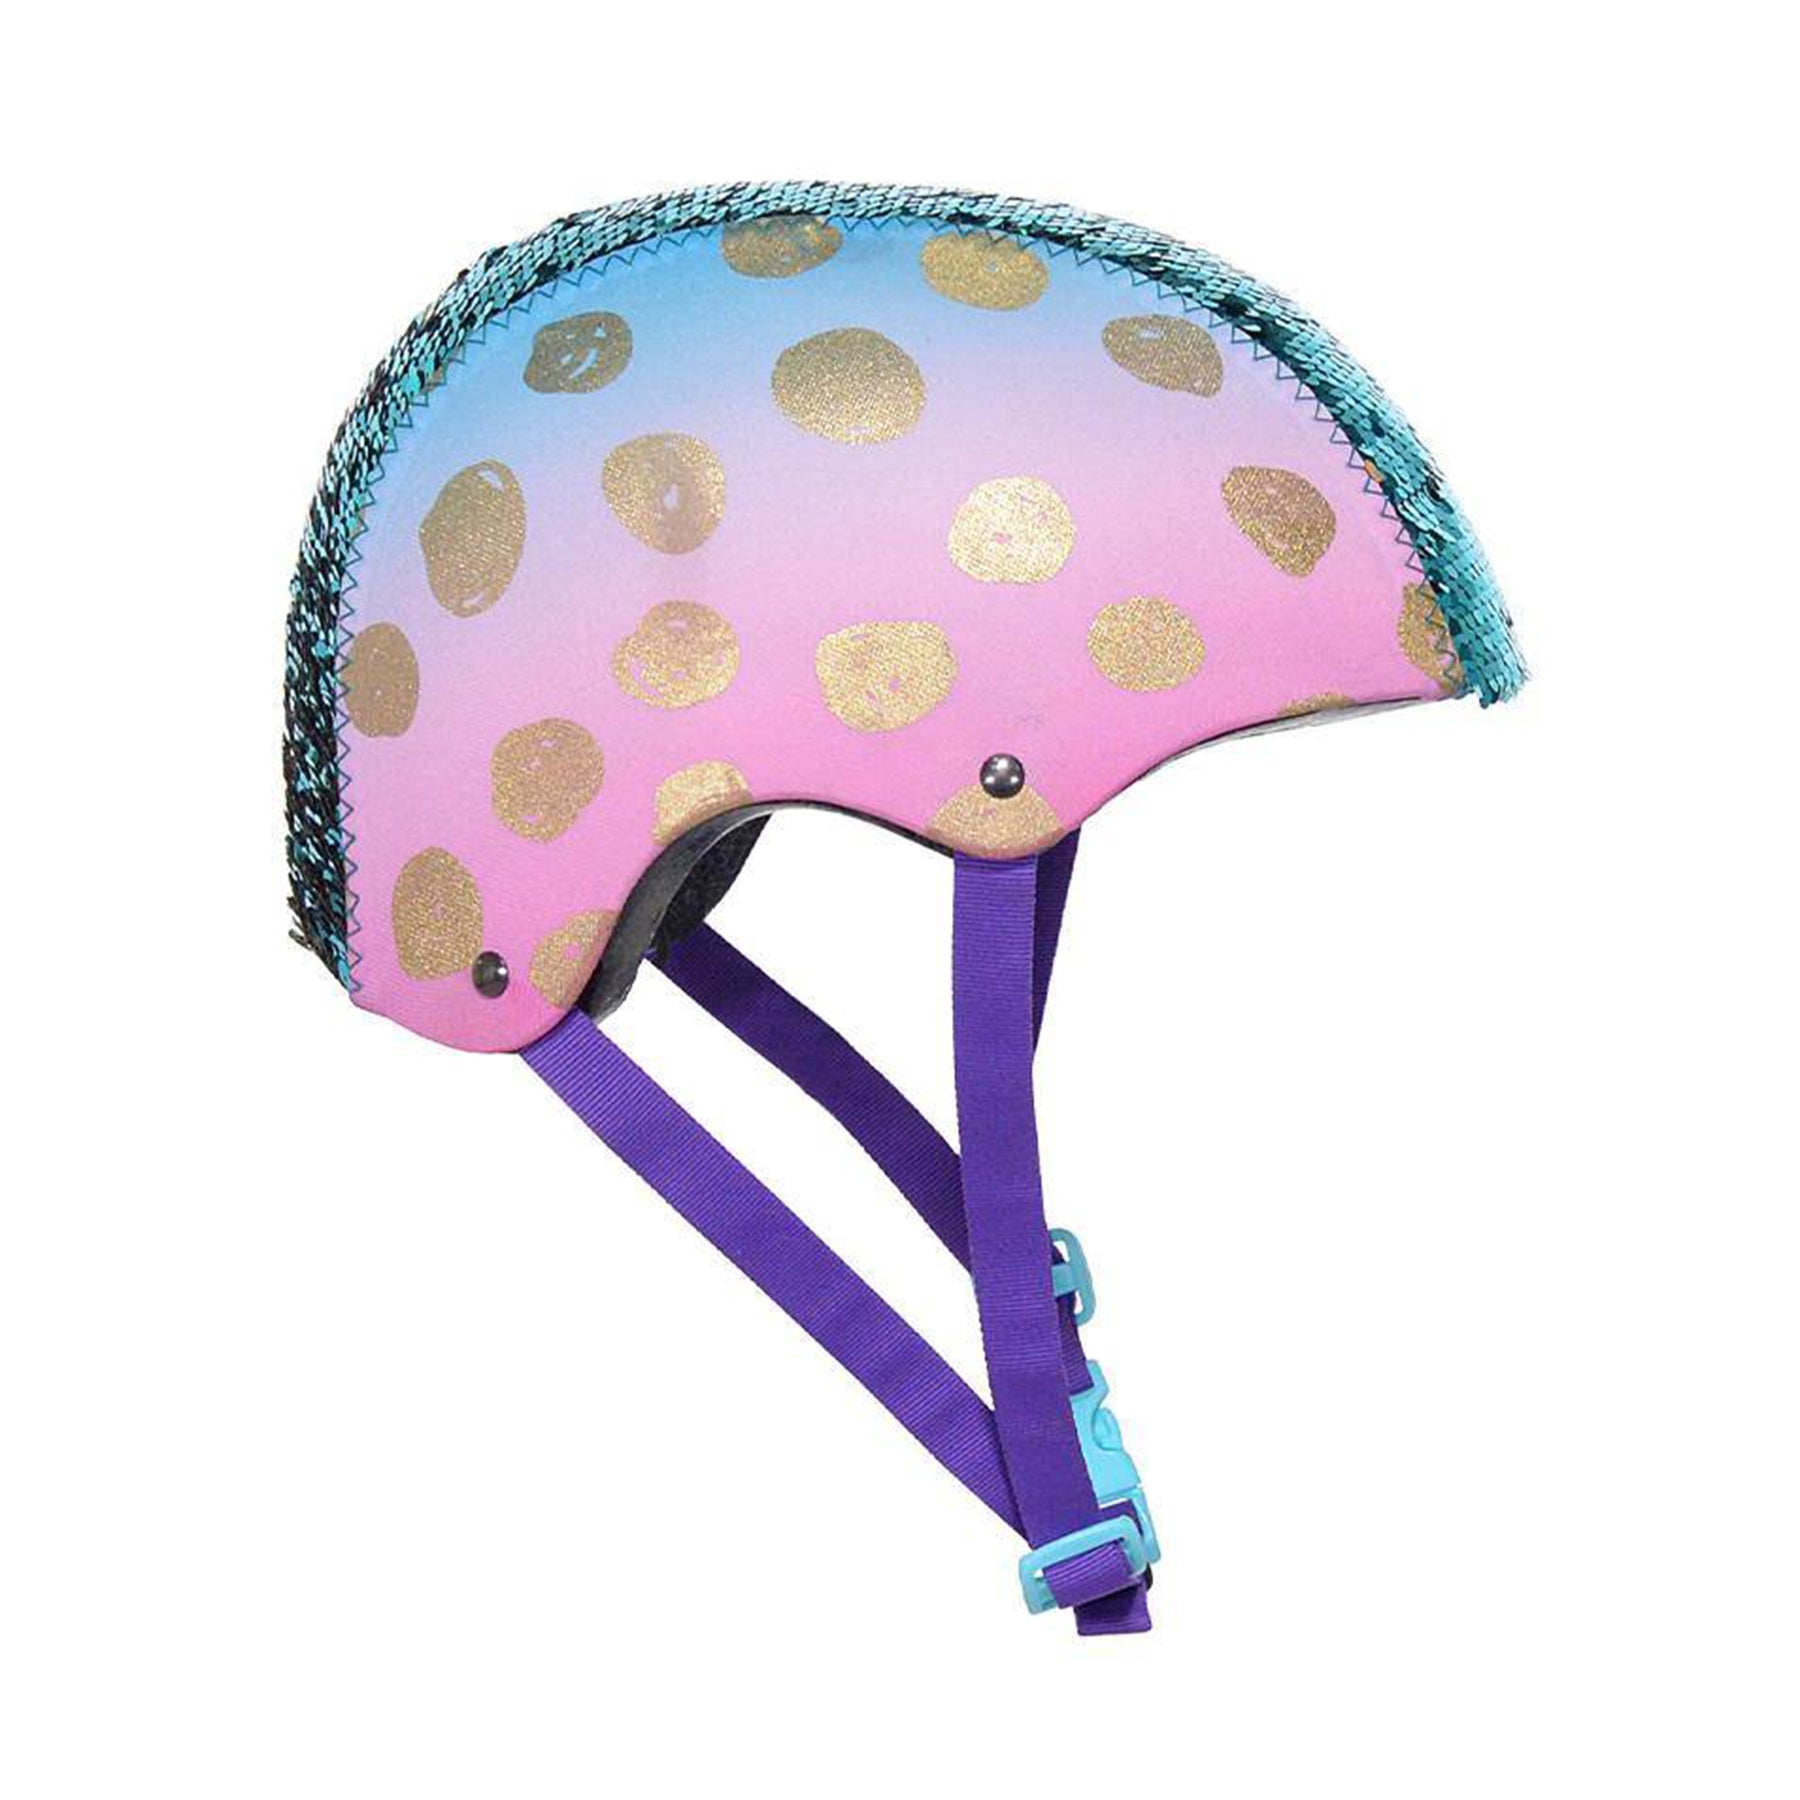 LittleMissMatched® Gold Dots Youth Multi-Sport Helmet | Helmet for Kids Ages 8+